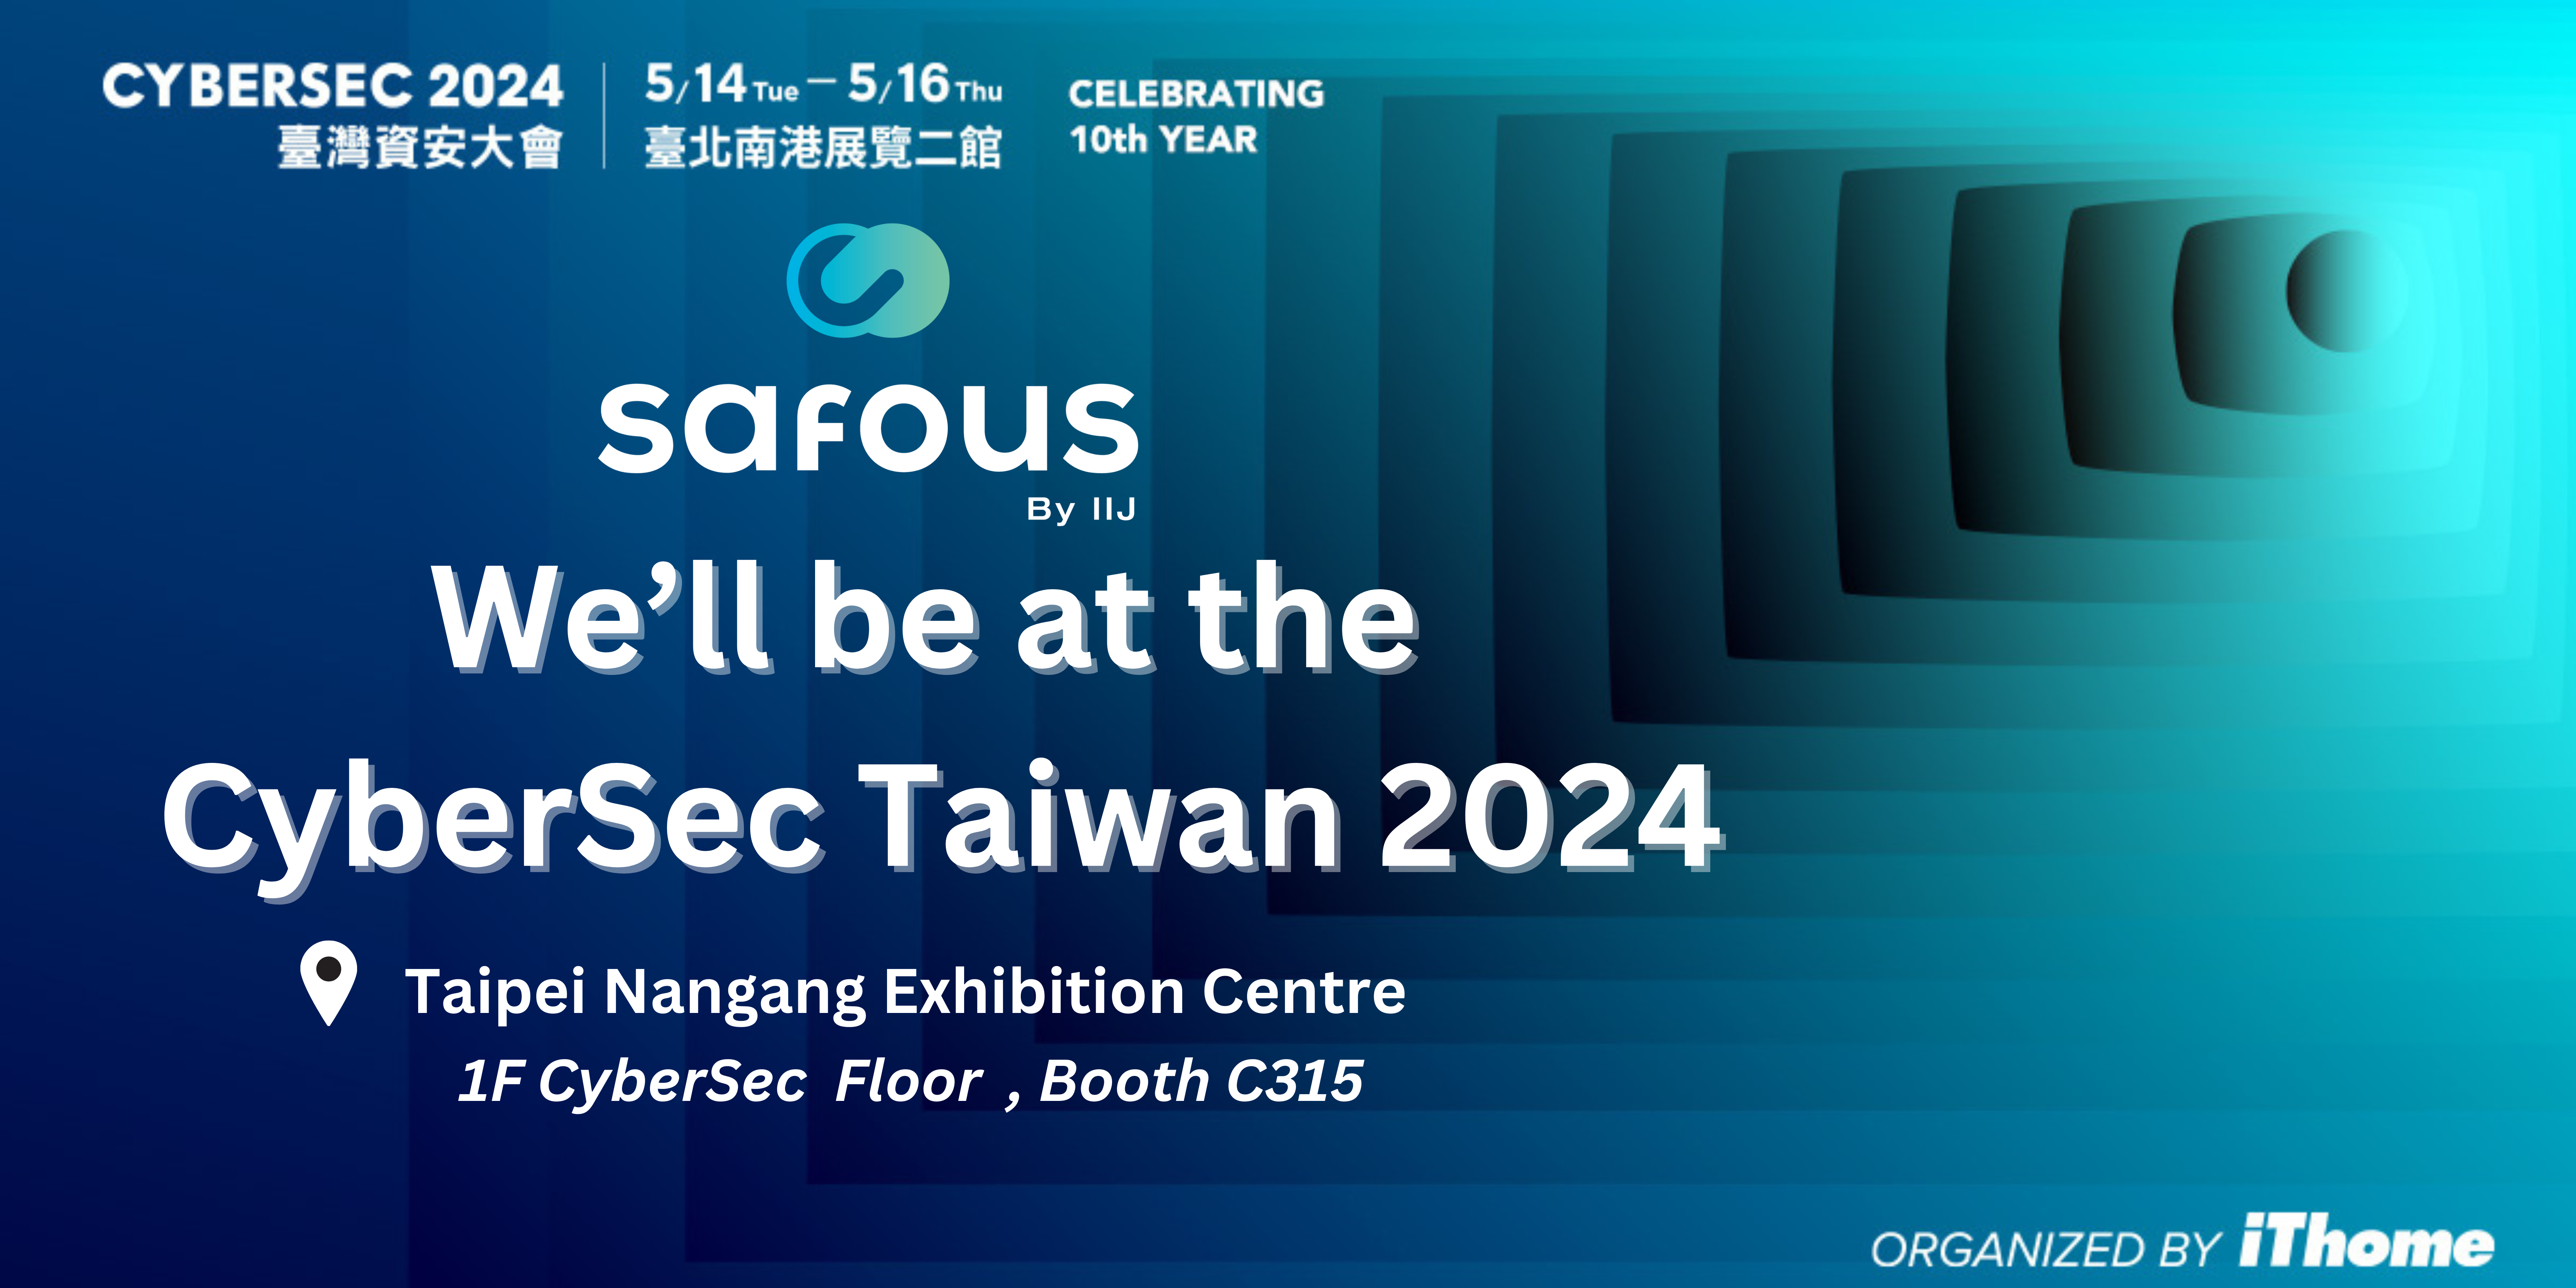 CyberSec Taiwan 2024